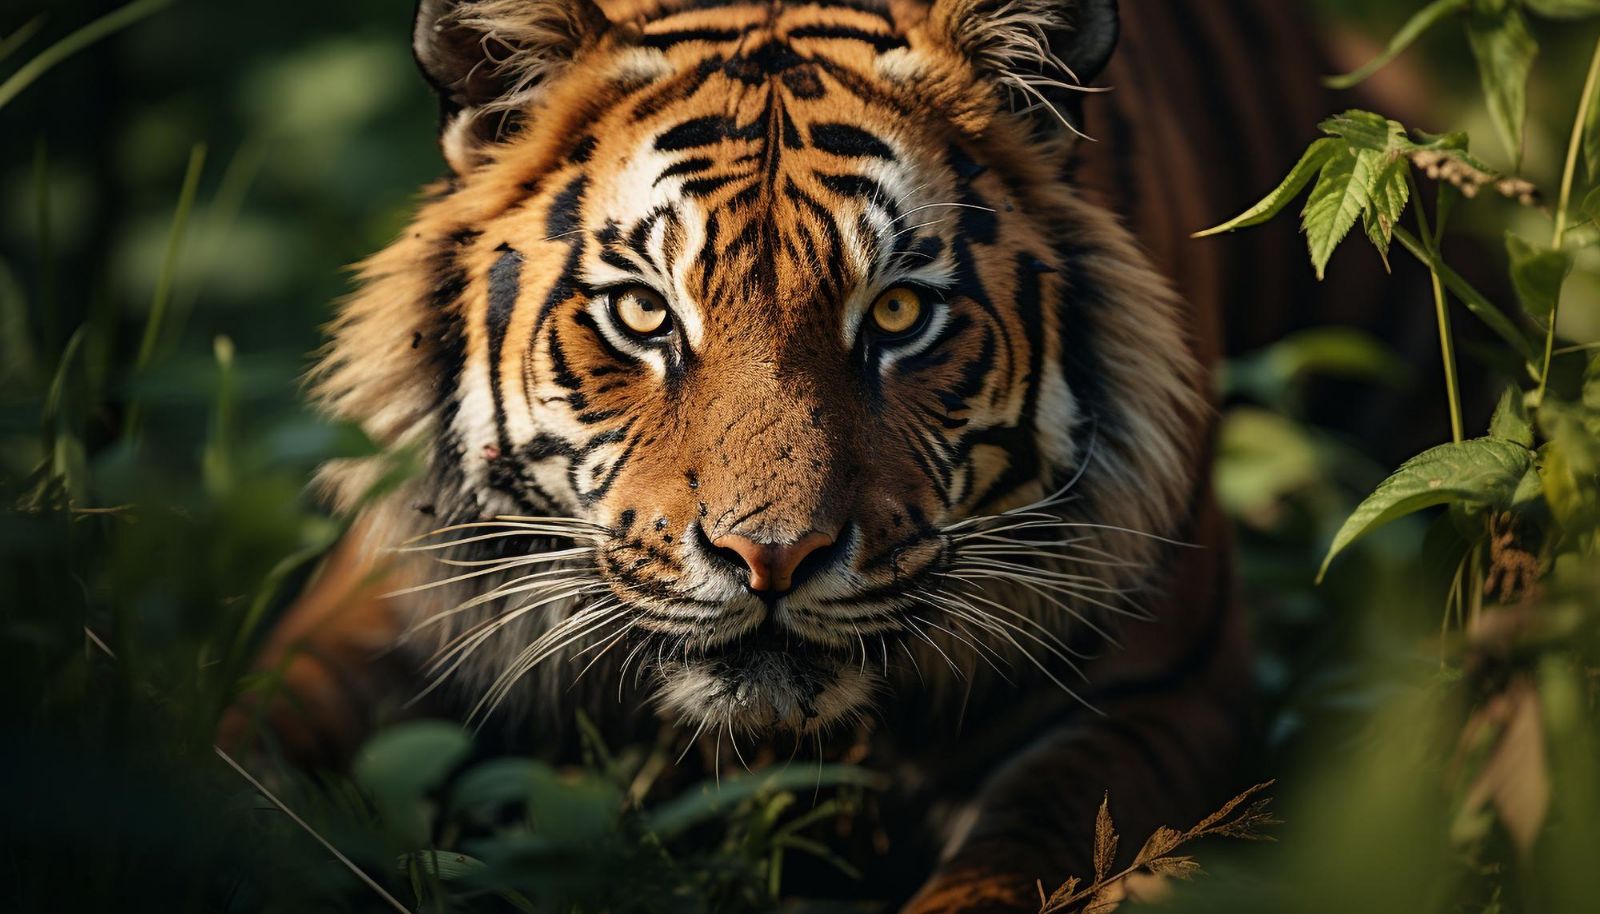 Harimau Memangsa Ternak di Pesisir Barat, Warga Diminta Waspada